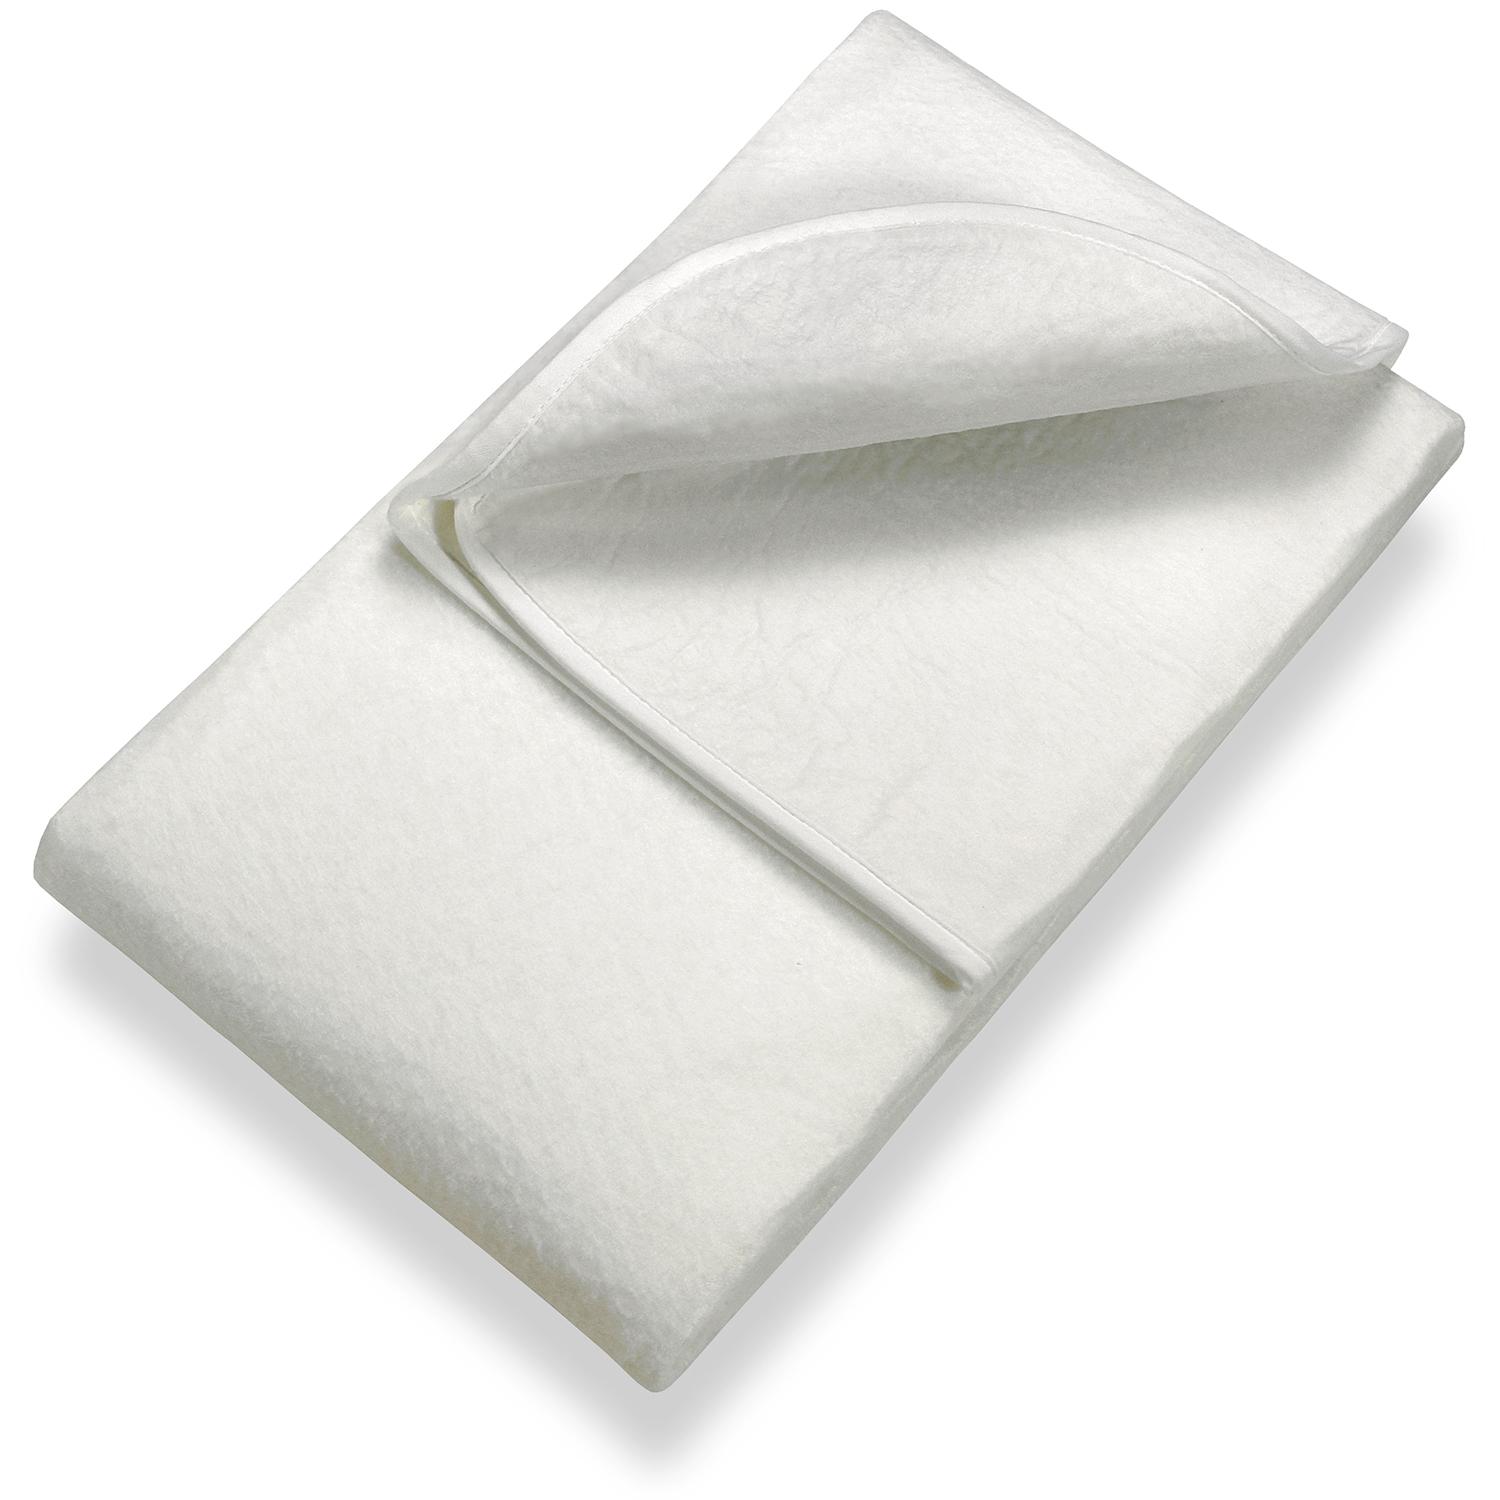 Sleezzz Basic iğneli keçe yatak pedi 180 x 200 cm, çıtalı çerçeve üzerine yerleştirmek için yatak koruyucu, beyaz